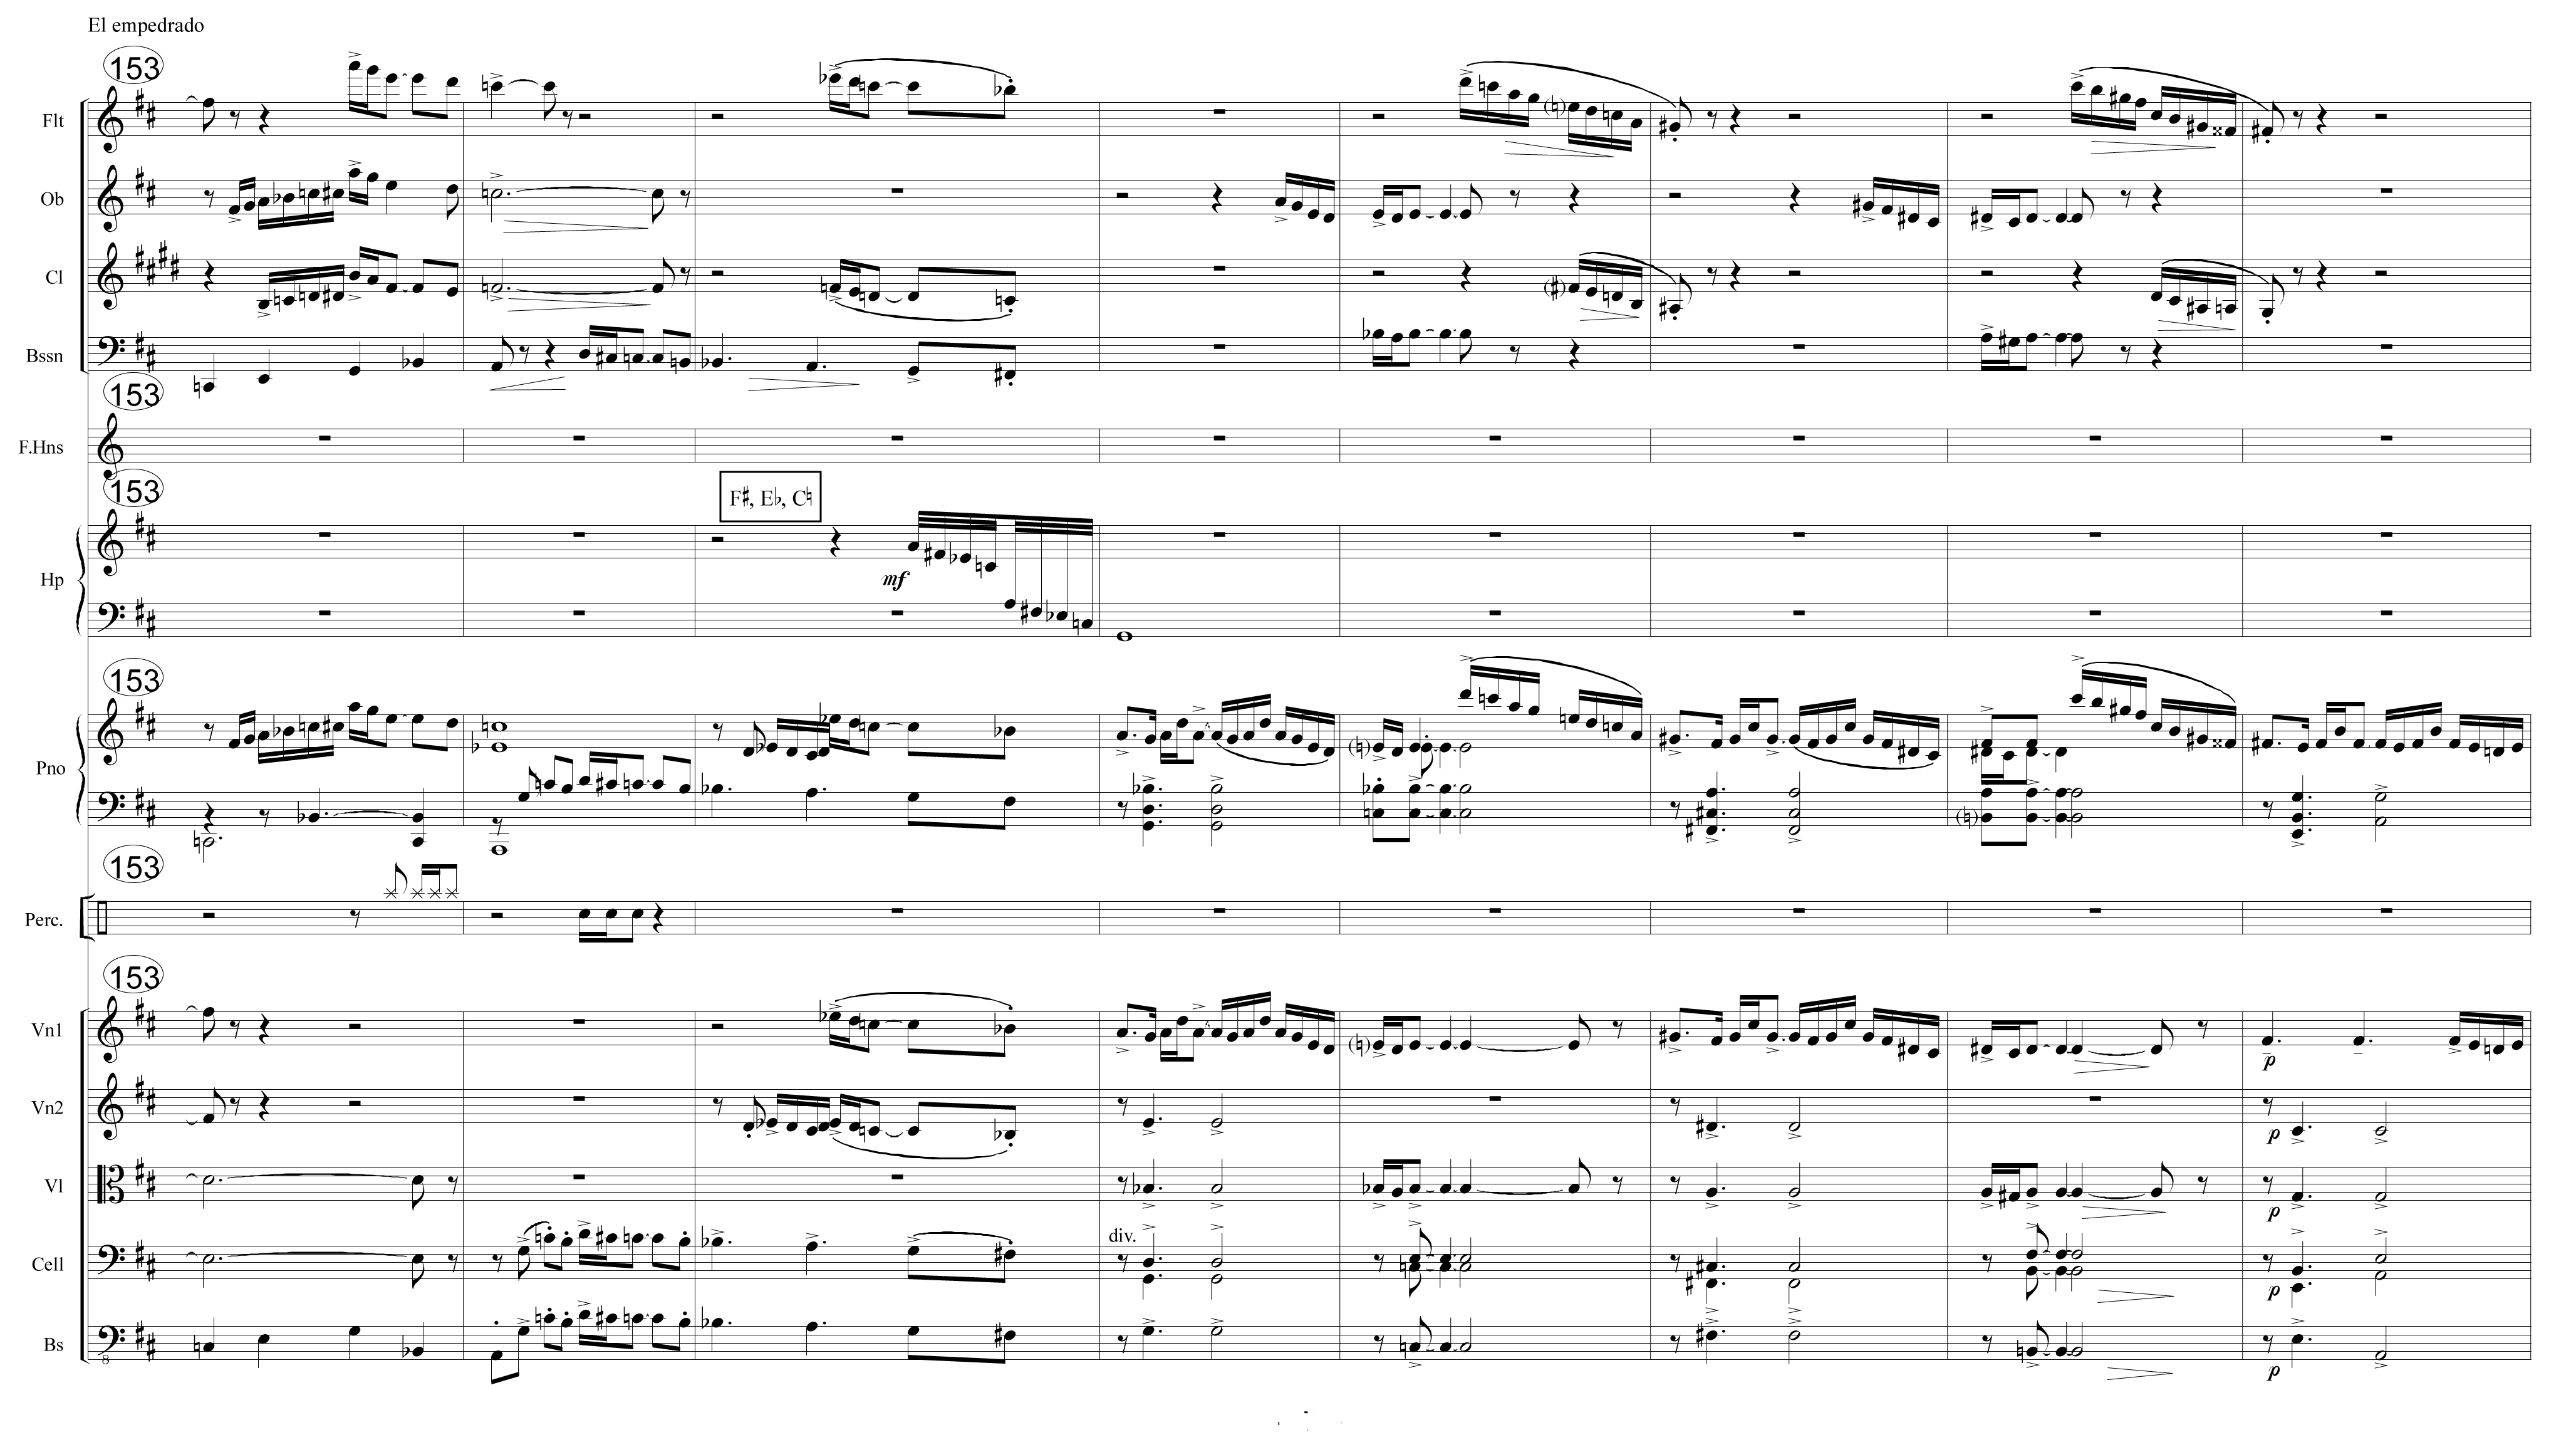 Orchestral score excerpt from Ziegler's composition "El Empedrado"